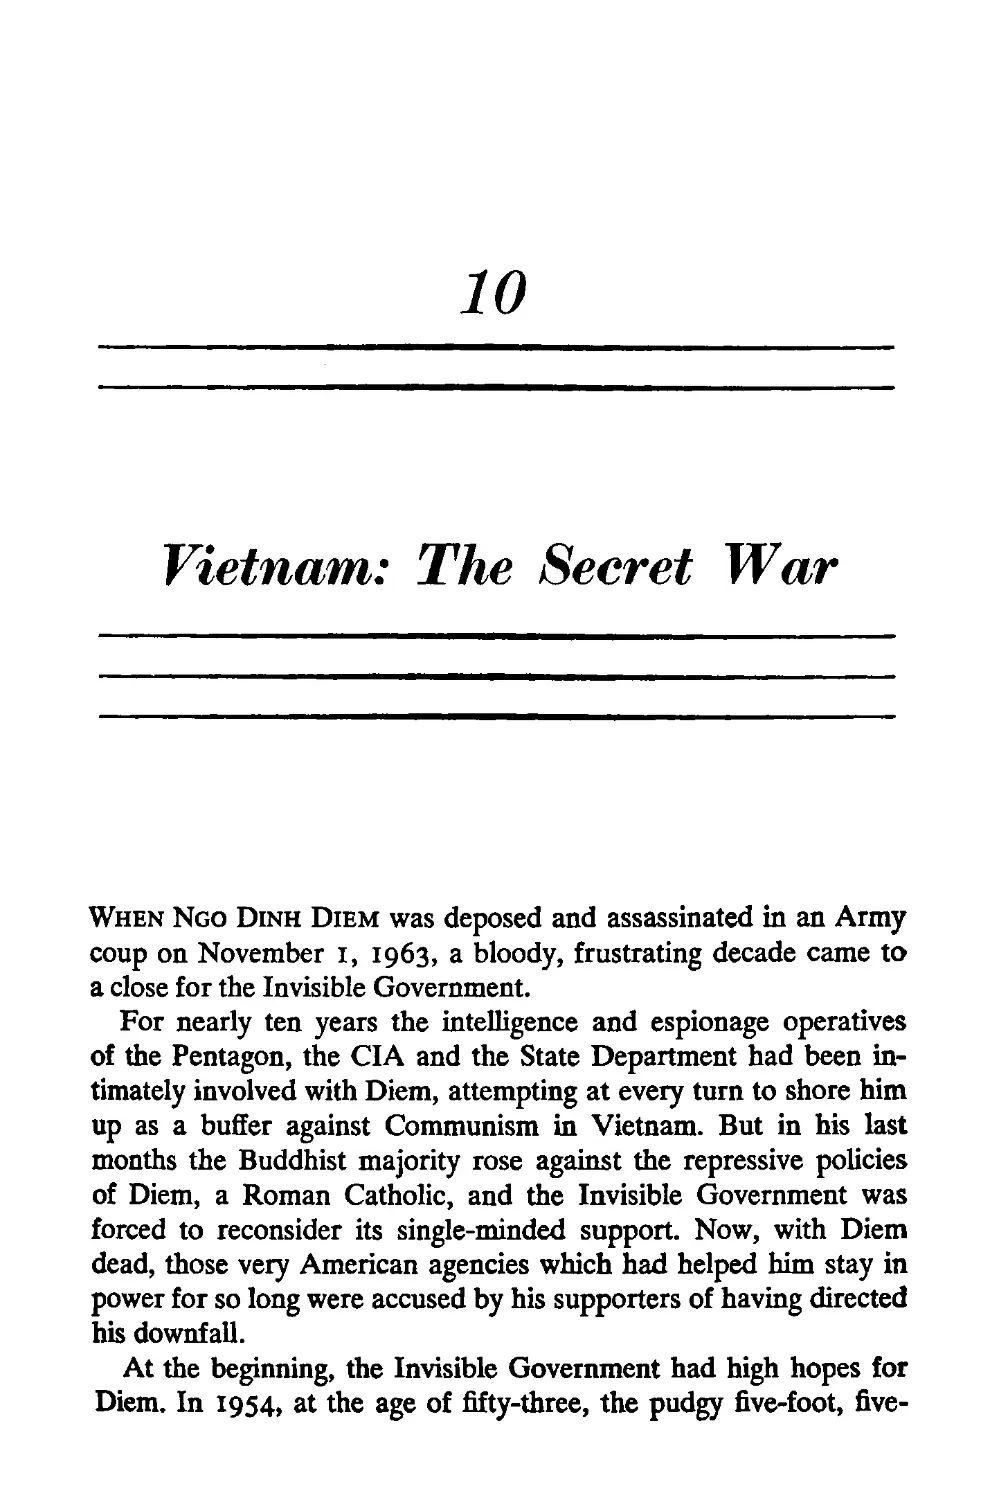 10. Vietnam: The Secret War